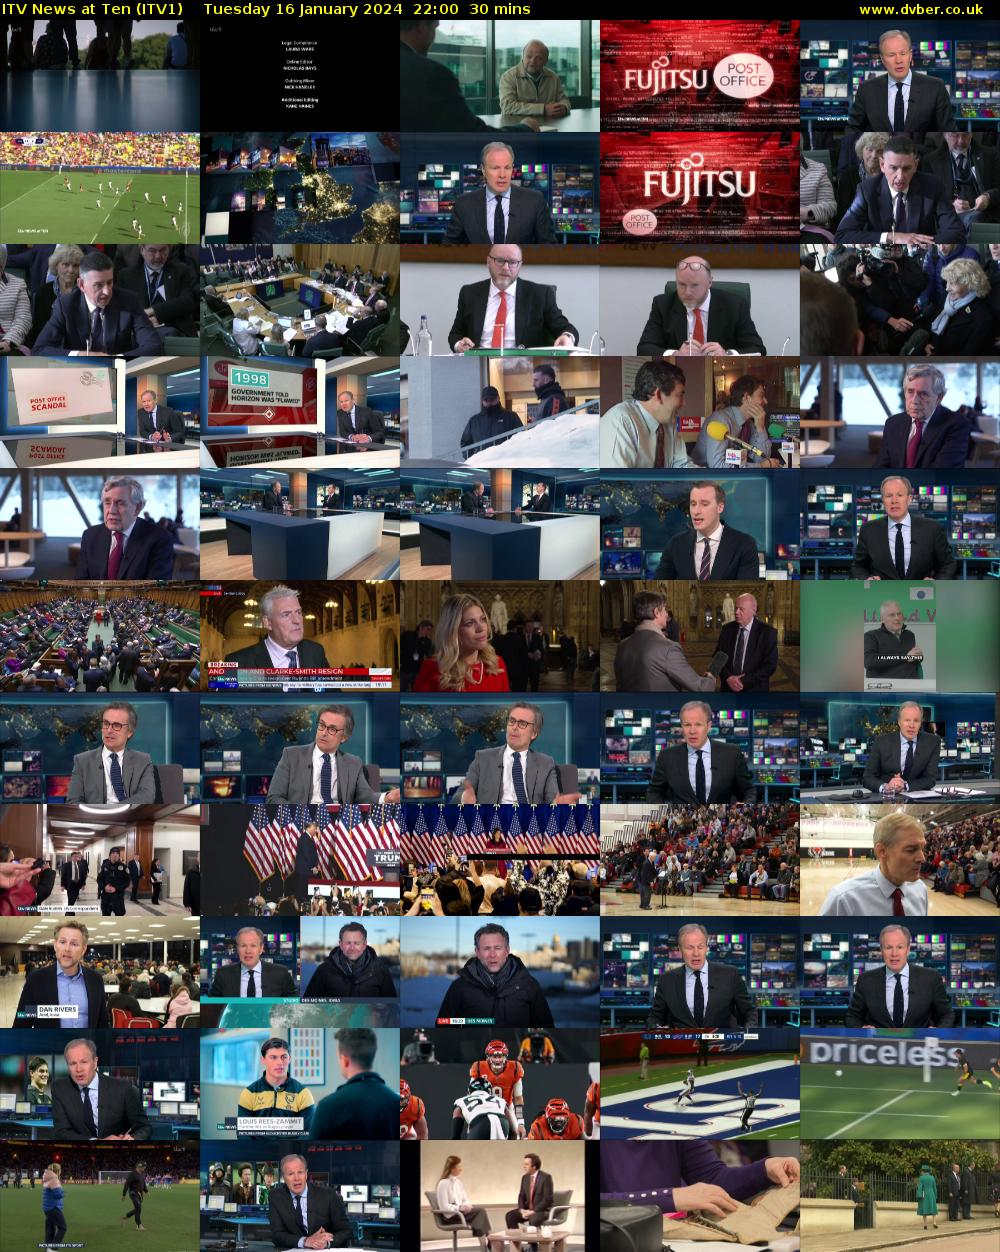 ITV News at Ten (ITV1) Tuesday 16 January 2024 22:00 - 22:30